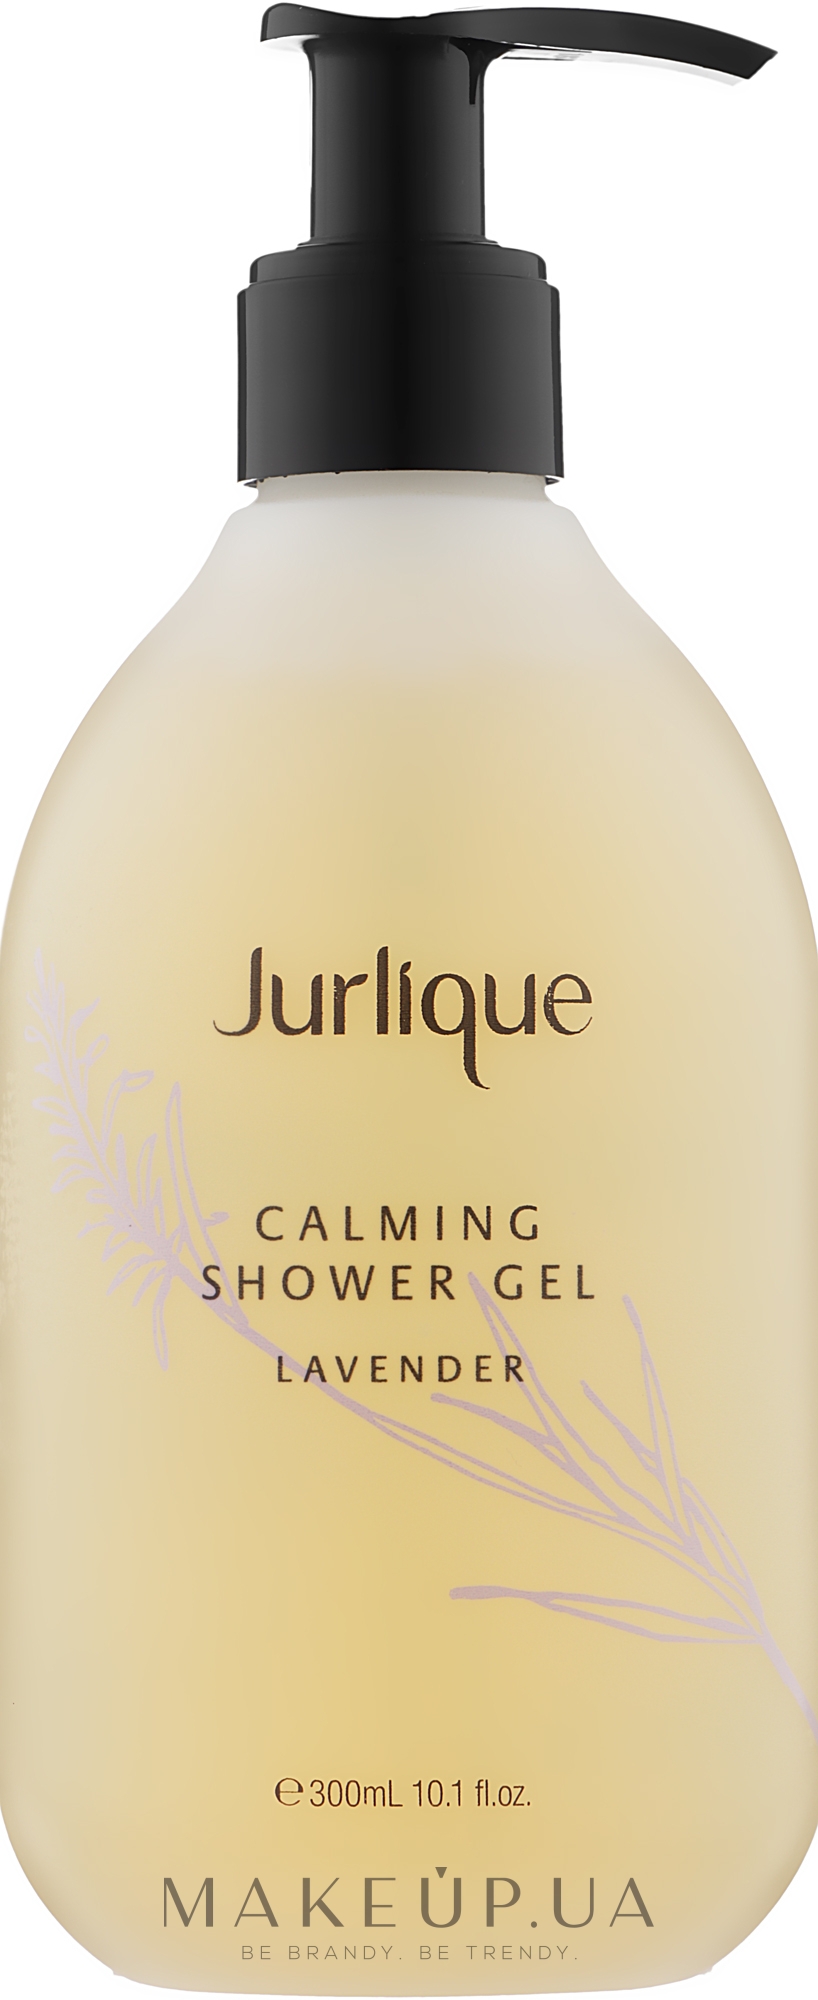 Заспокійливий гель для душу з екстрактом лаванди - Jurlique Calming Shower Gel Lavender — фото 300ml